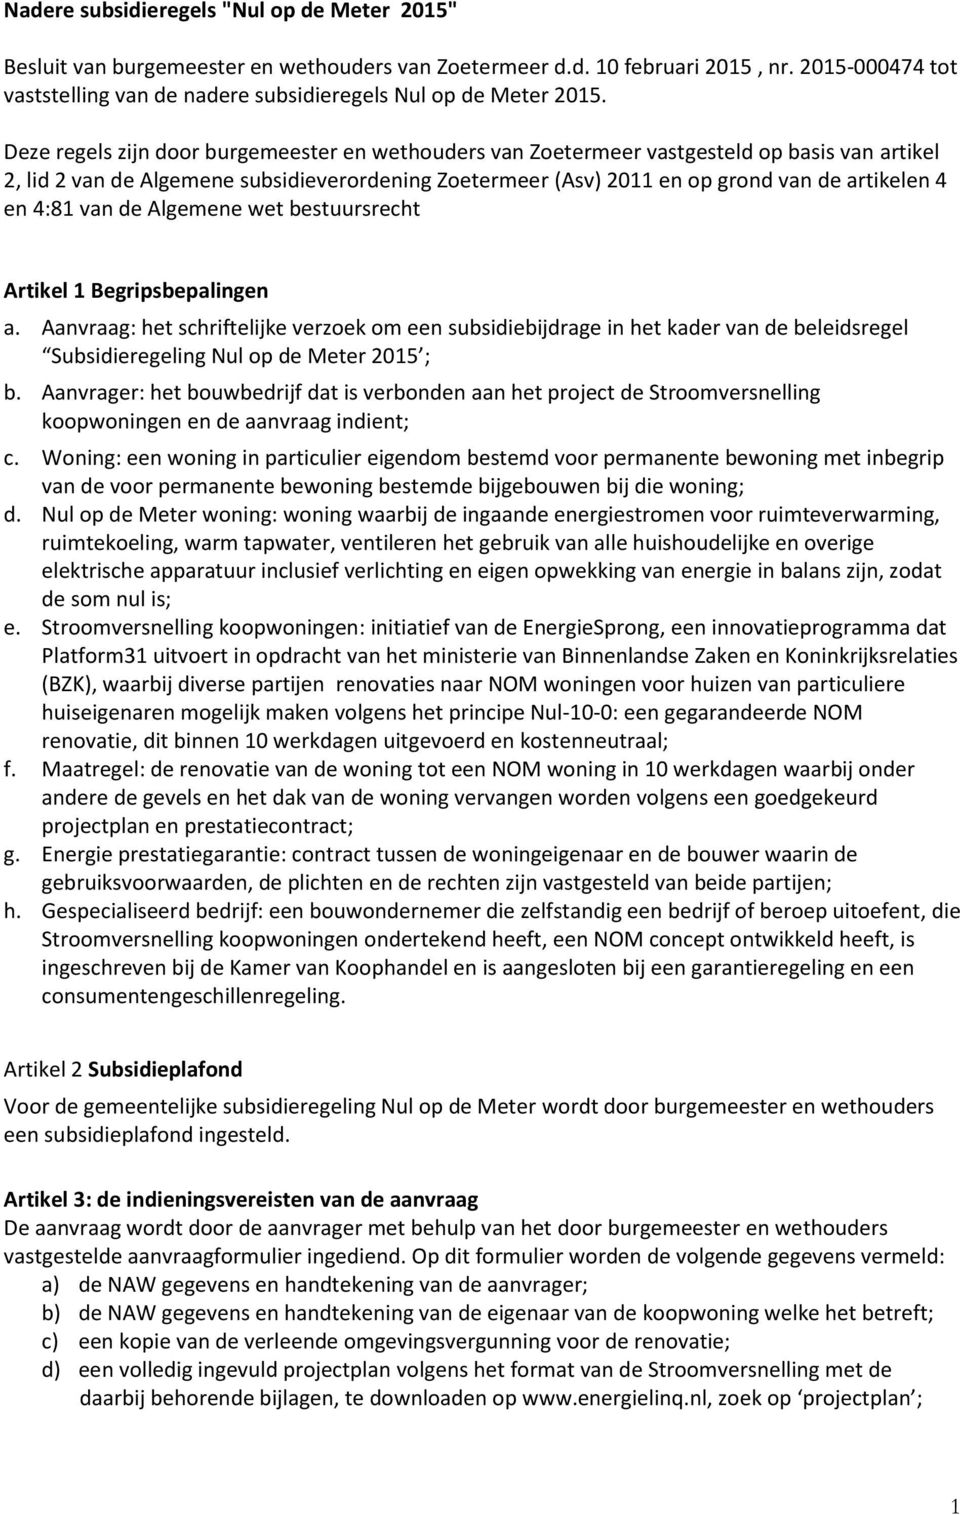 Deze regels zijn door burgemeester en wethouders van Zoetermeer vastgesteld op basis van artikel 2, lid 2 van de Algemene subsidieverordening Zoetermeer (Asv) 2011 en op grond van de artikelen 4 en